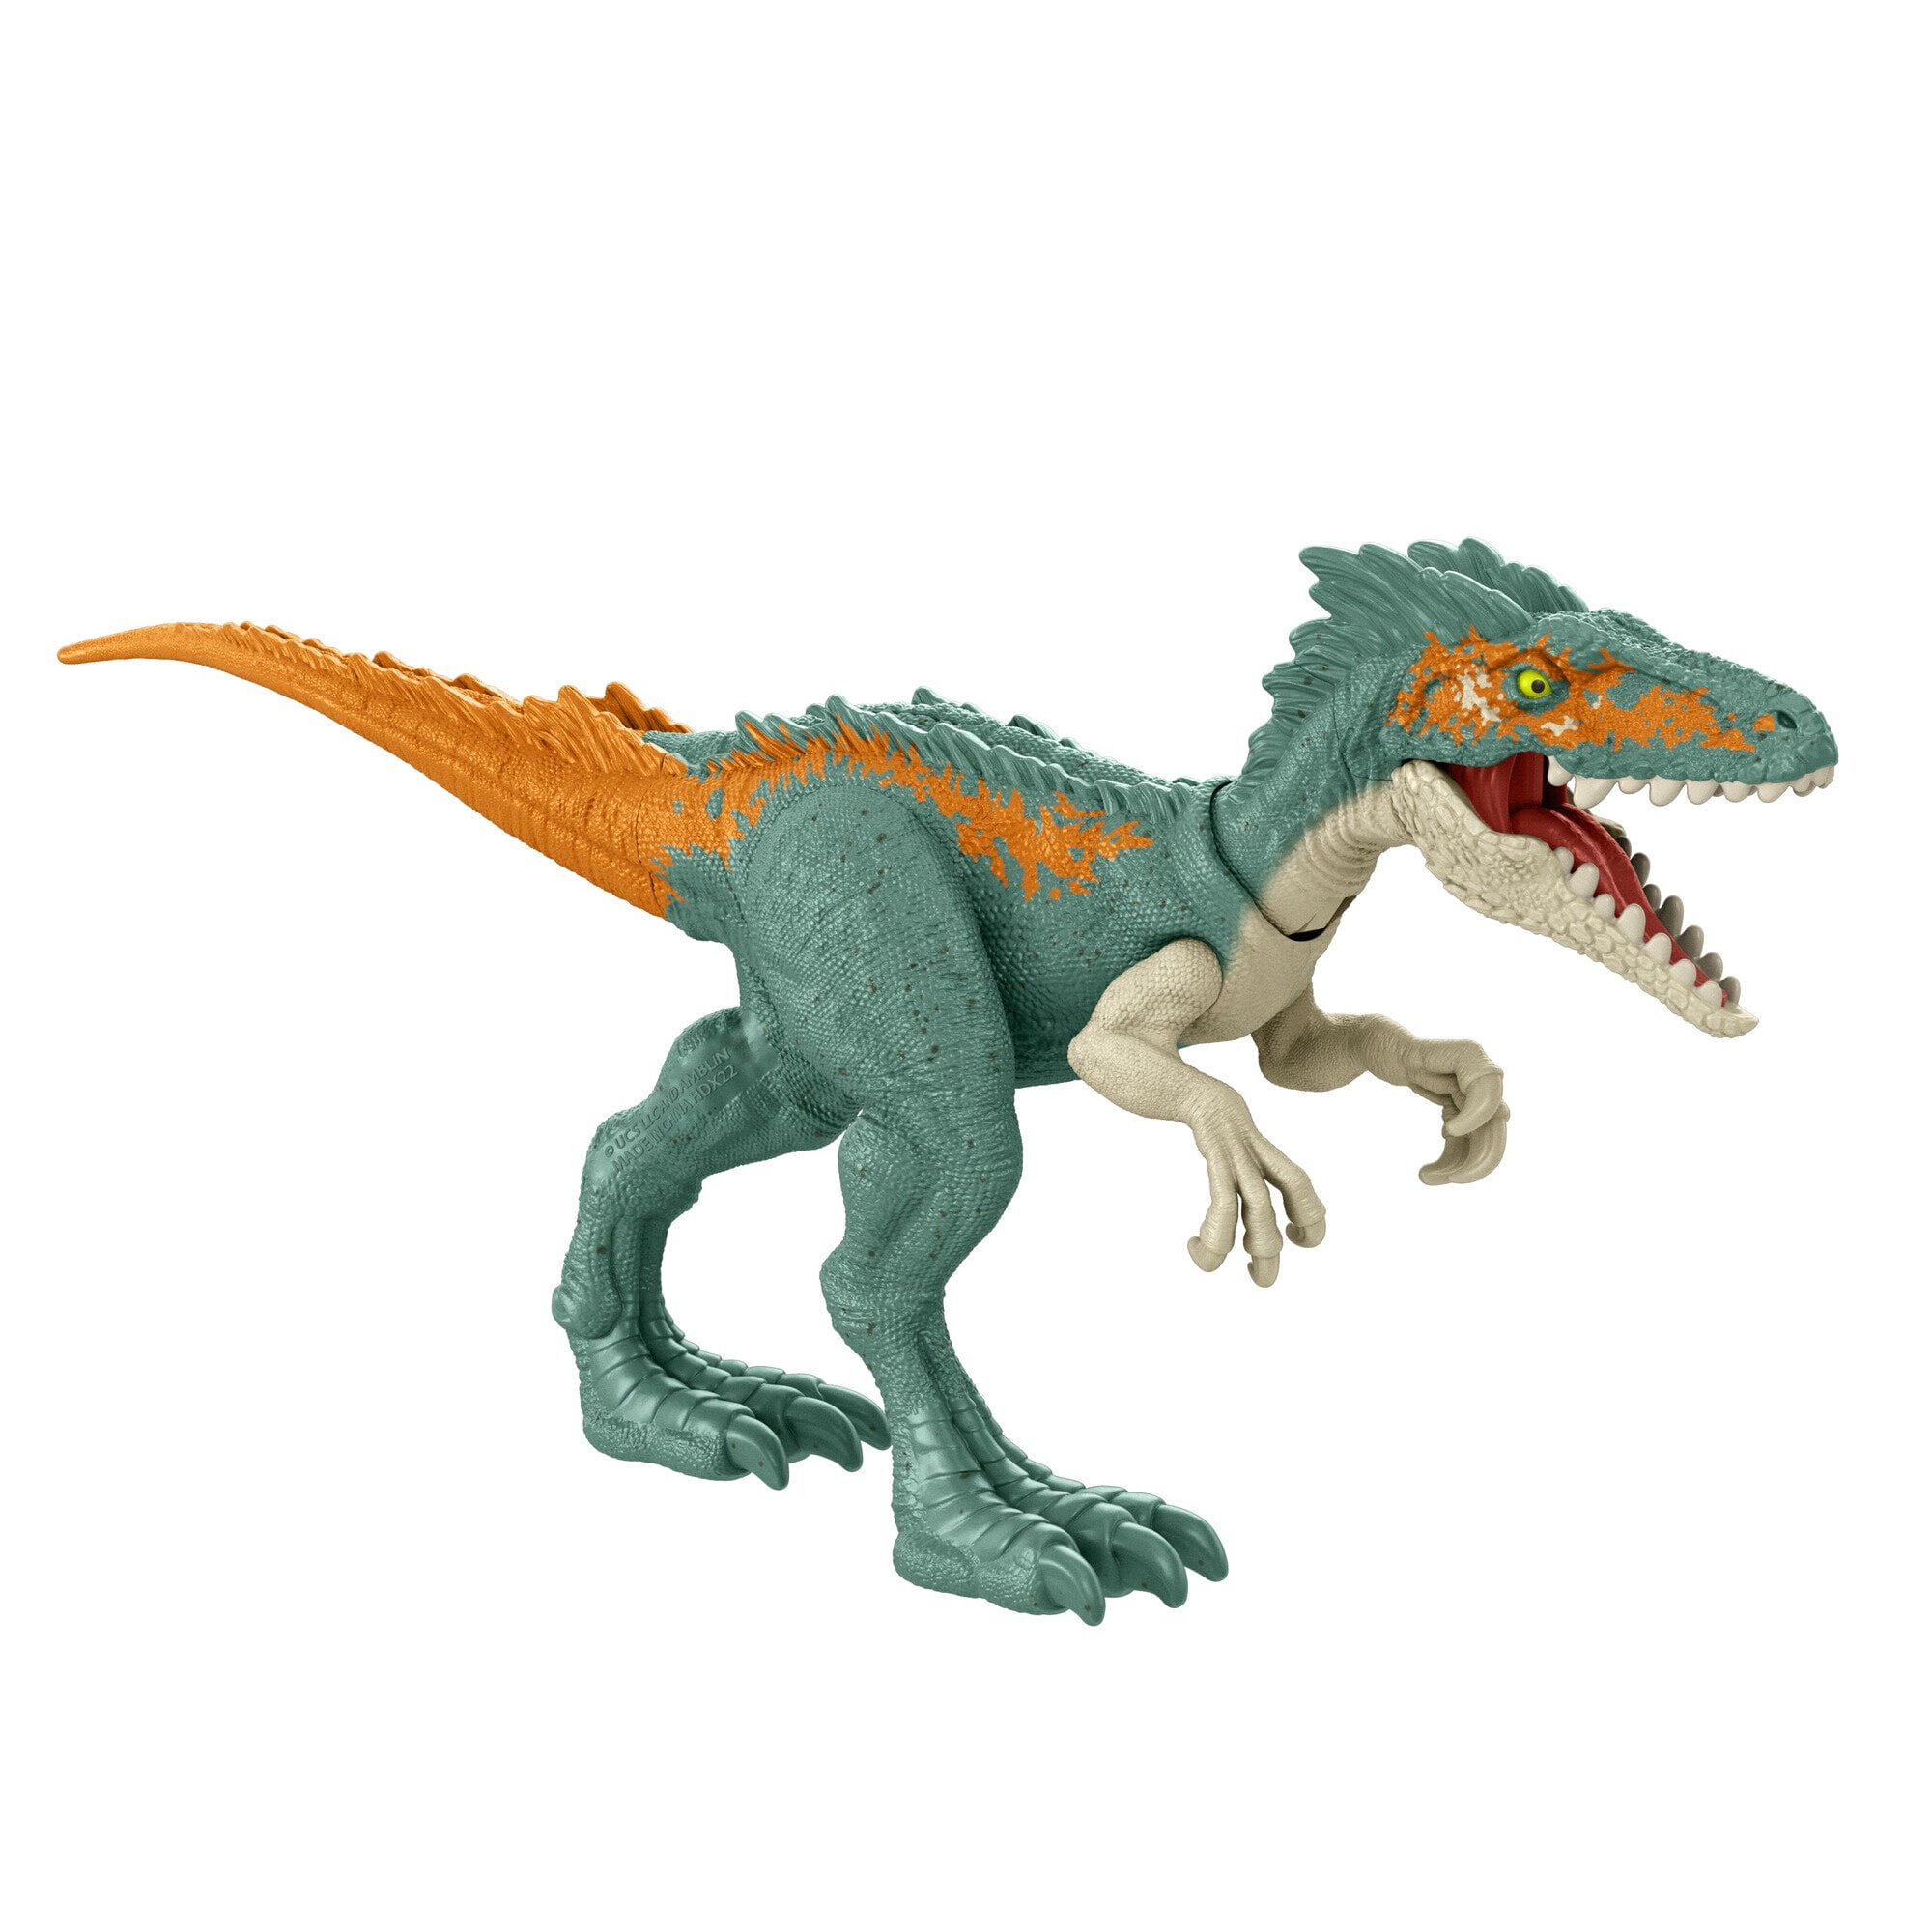 Details about   Jurassic World Fallen Kingdom Indoraptor Indominus Dinosaur Raptor toy Fit Lego 